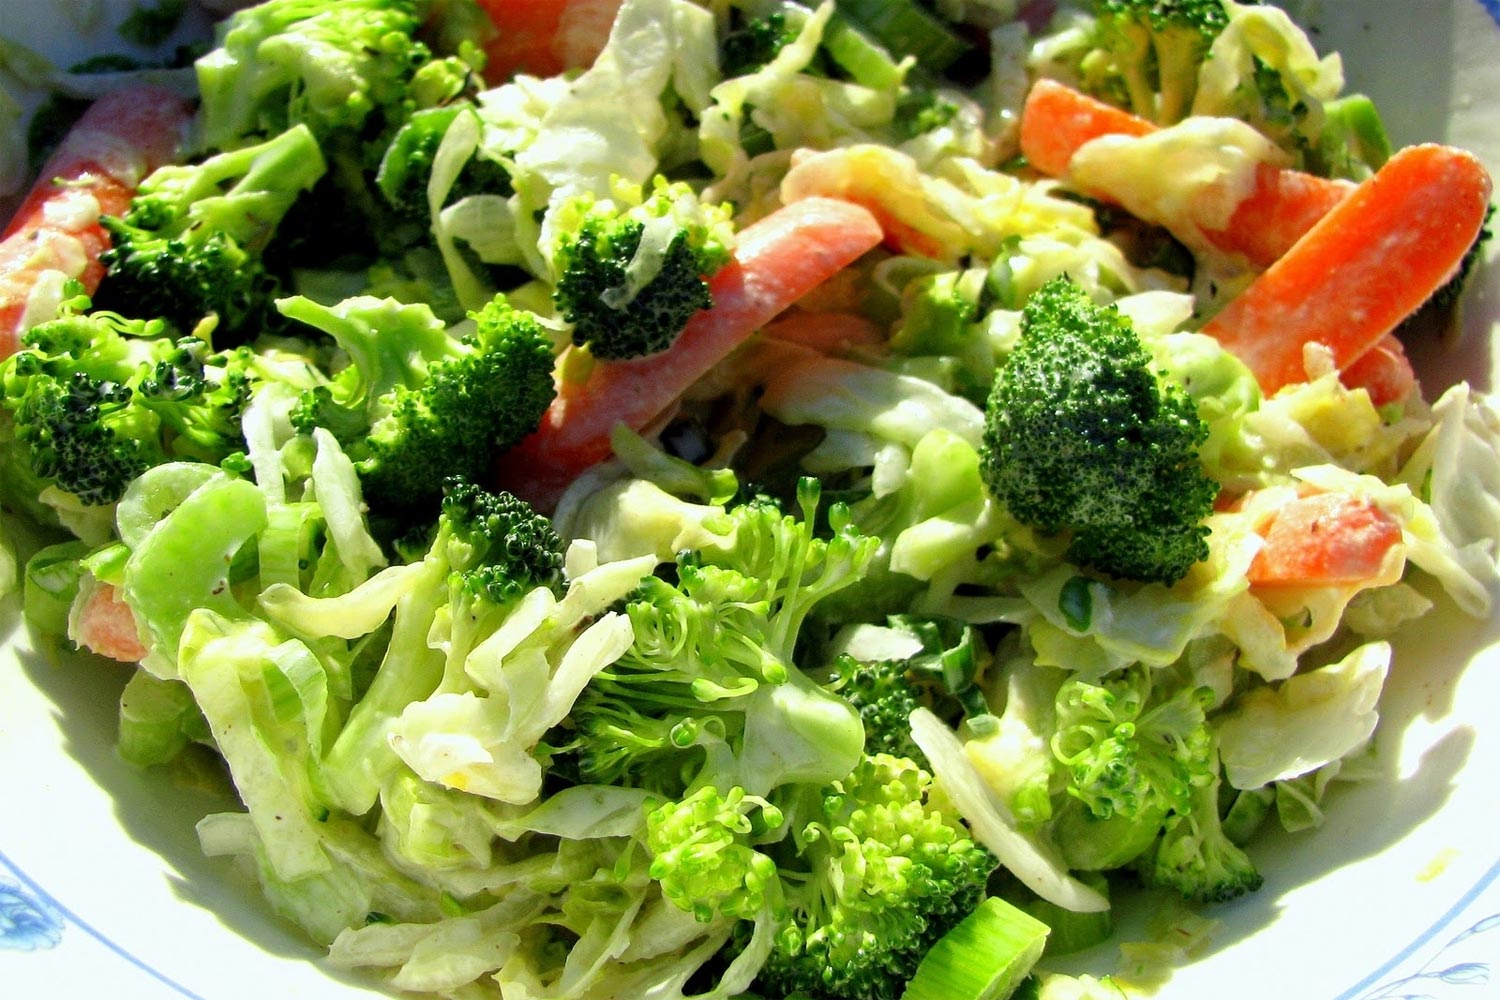 Ensalada de pollo con verduras variadas (Brocoli, zanahoria, etc)